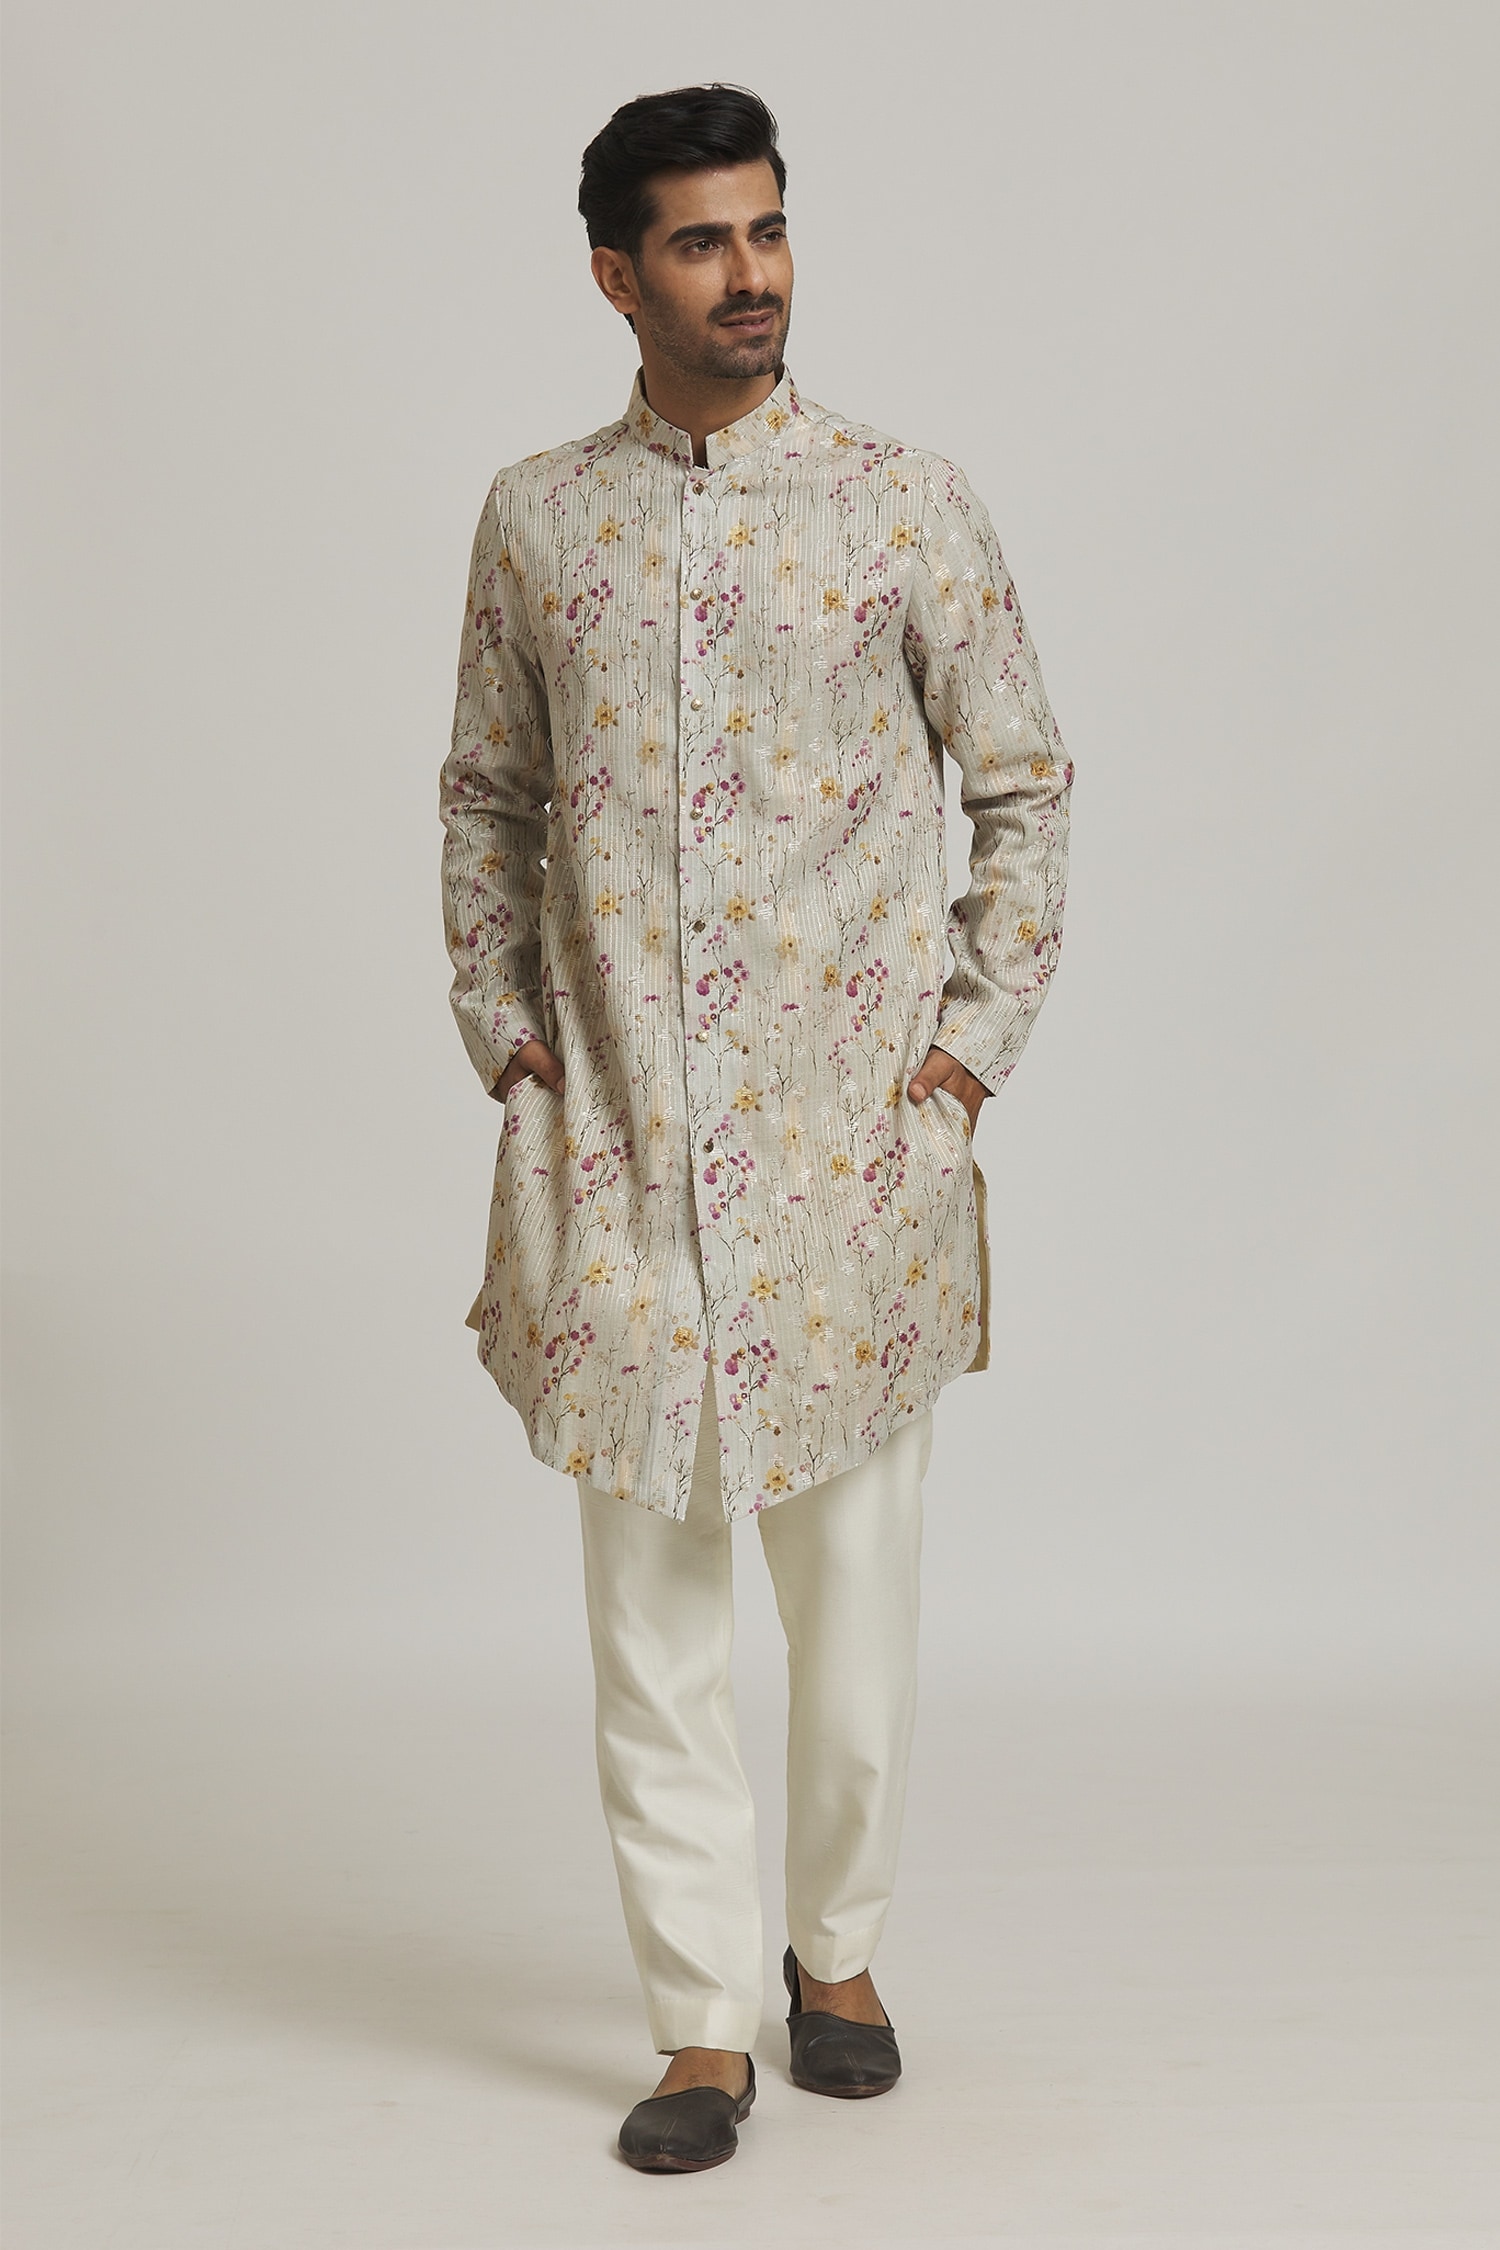 Nero by Shaifali and Satya Ivory Cotton Printed Floral Kurta And Aligadi Pant Set For Men